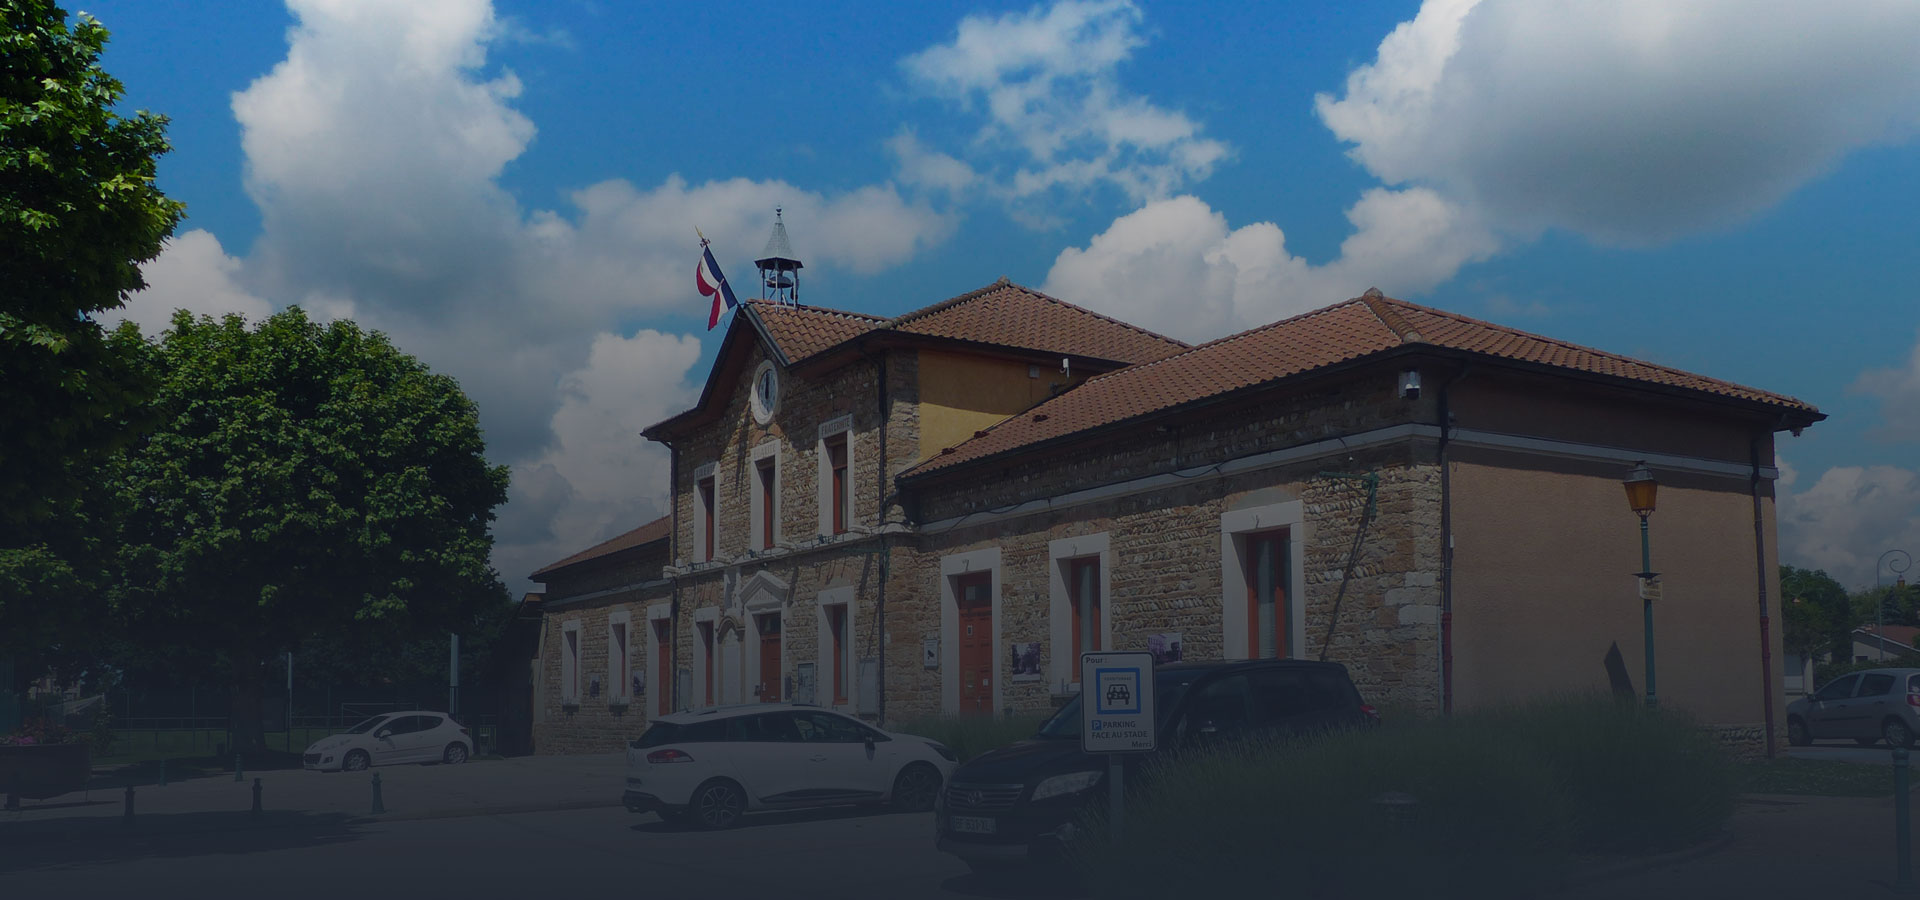 Le département du Rhône accorde une subvention à la commune pour les travaux de rénovation de deux salles de classe